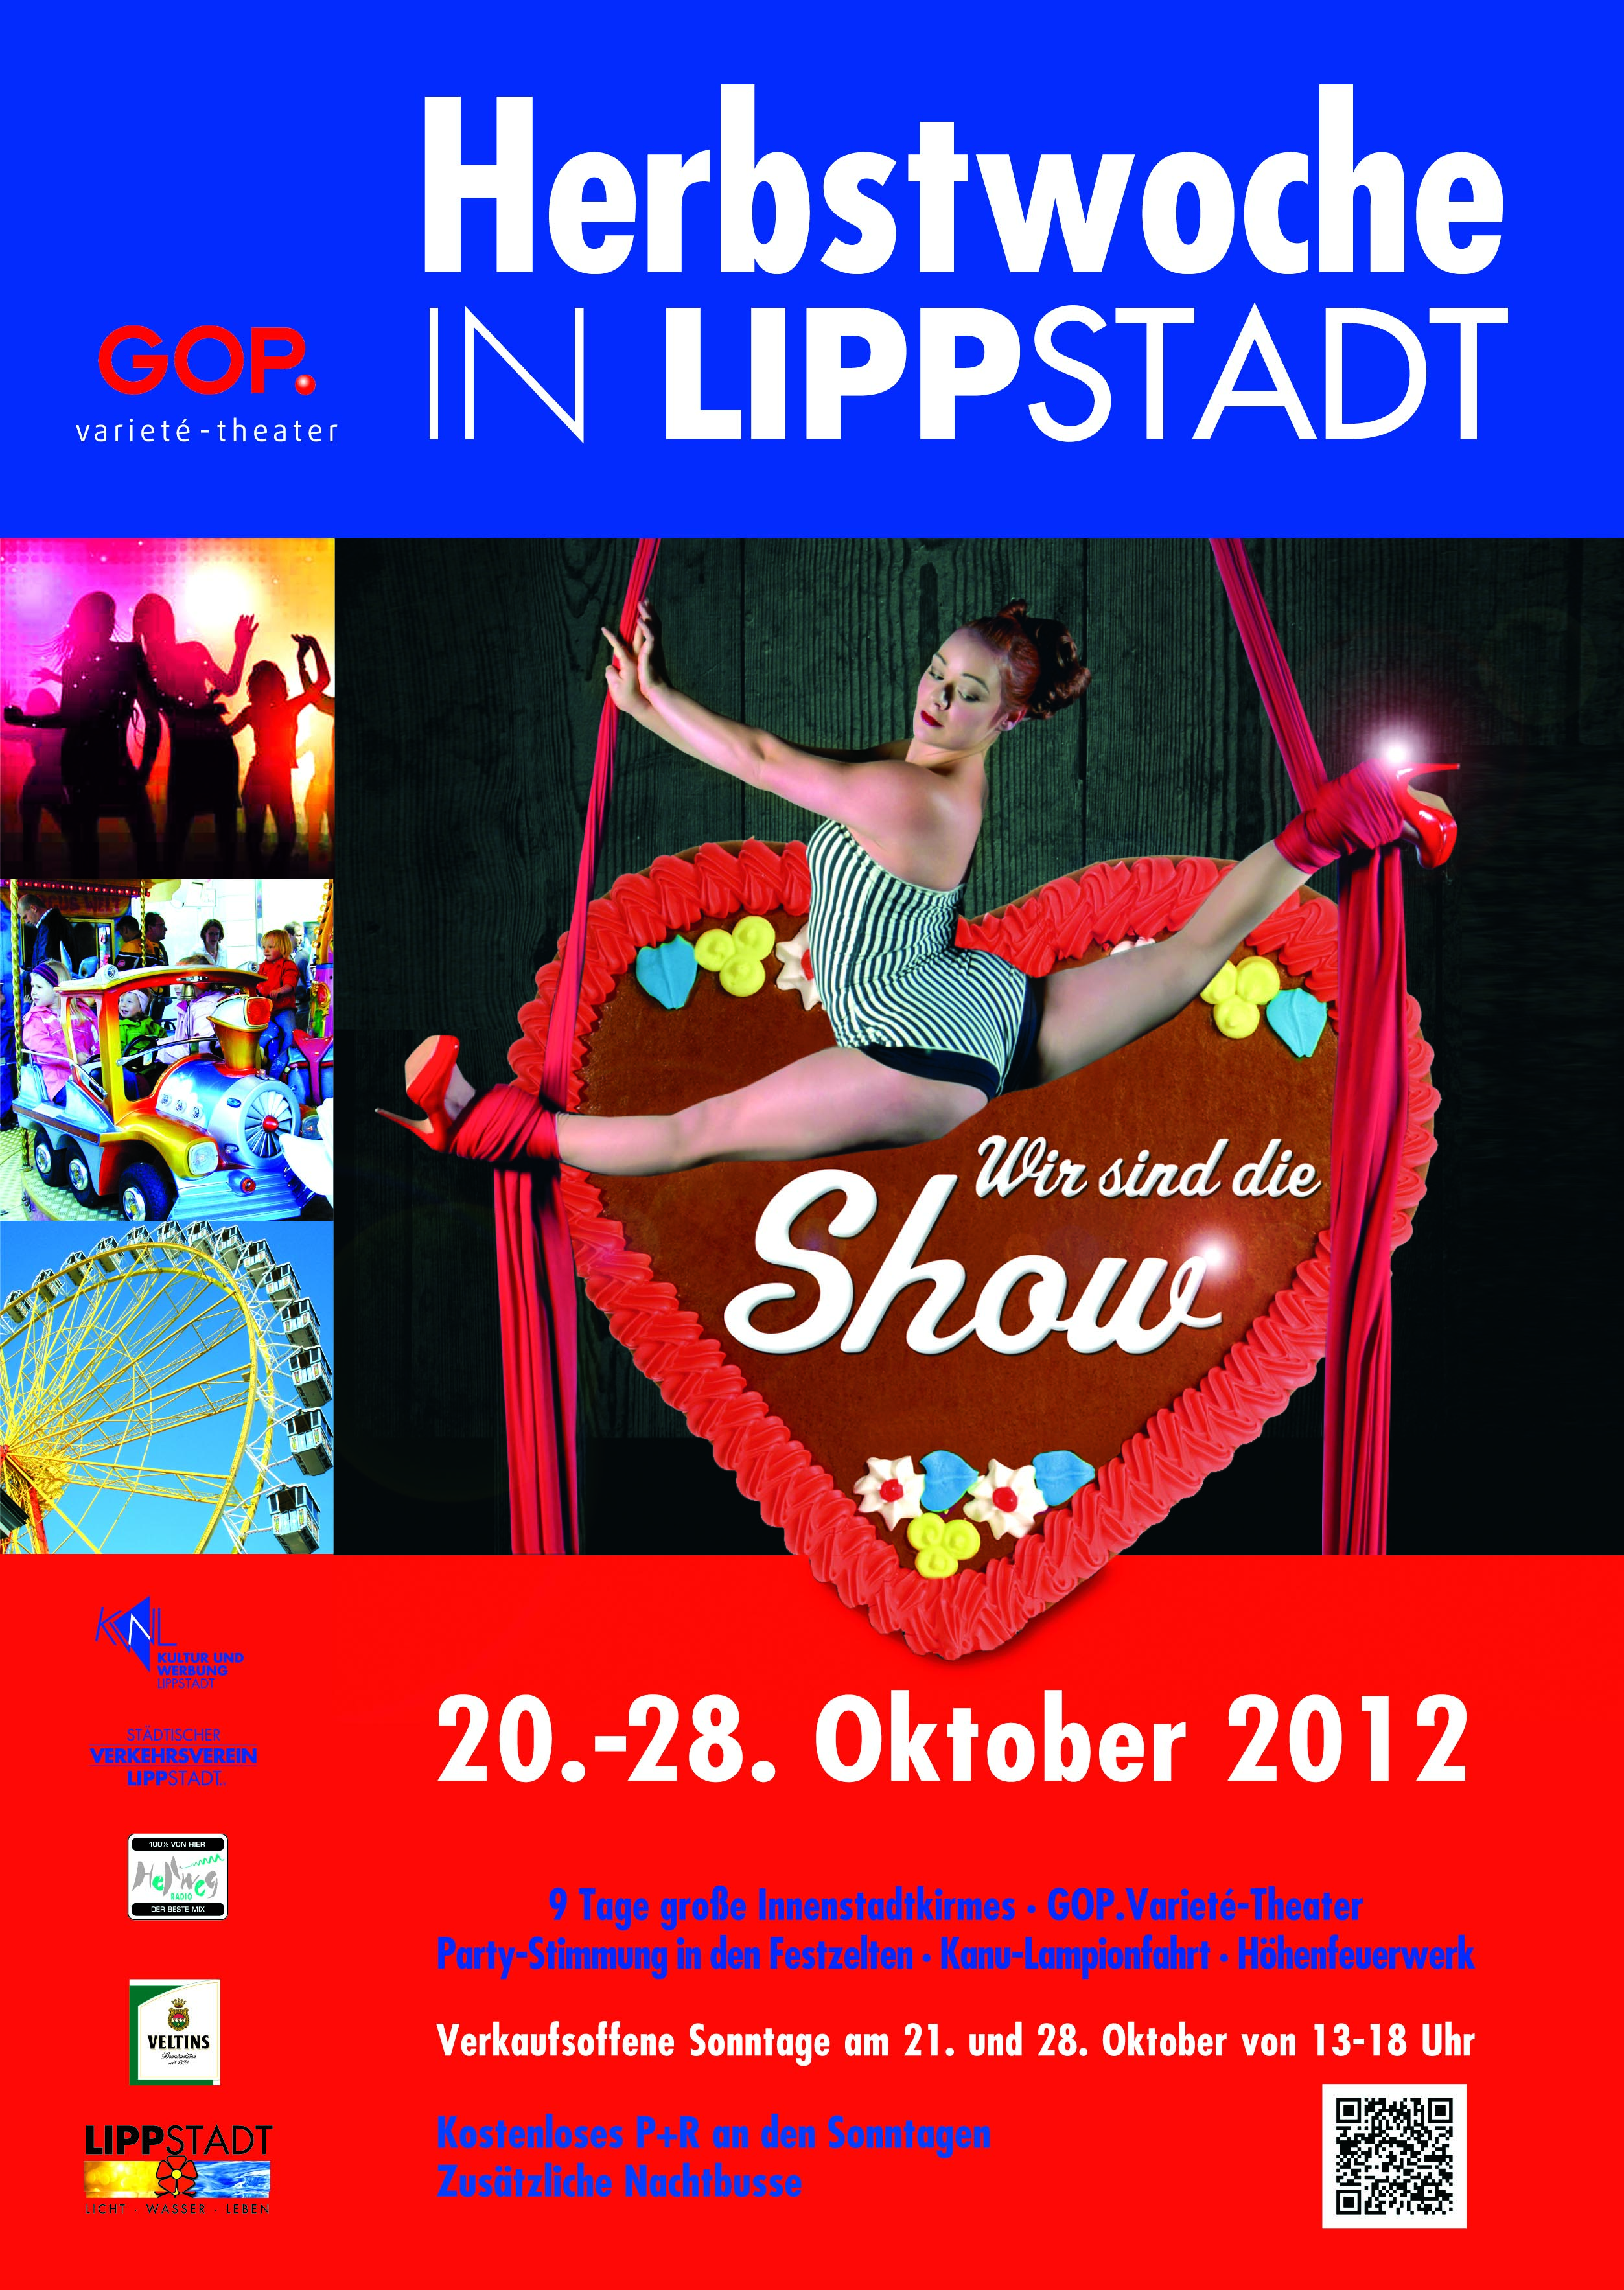 Bild des Werbeplakat zur Herbstwoche in Lippstadt